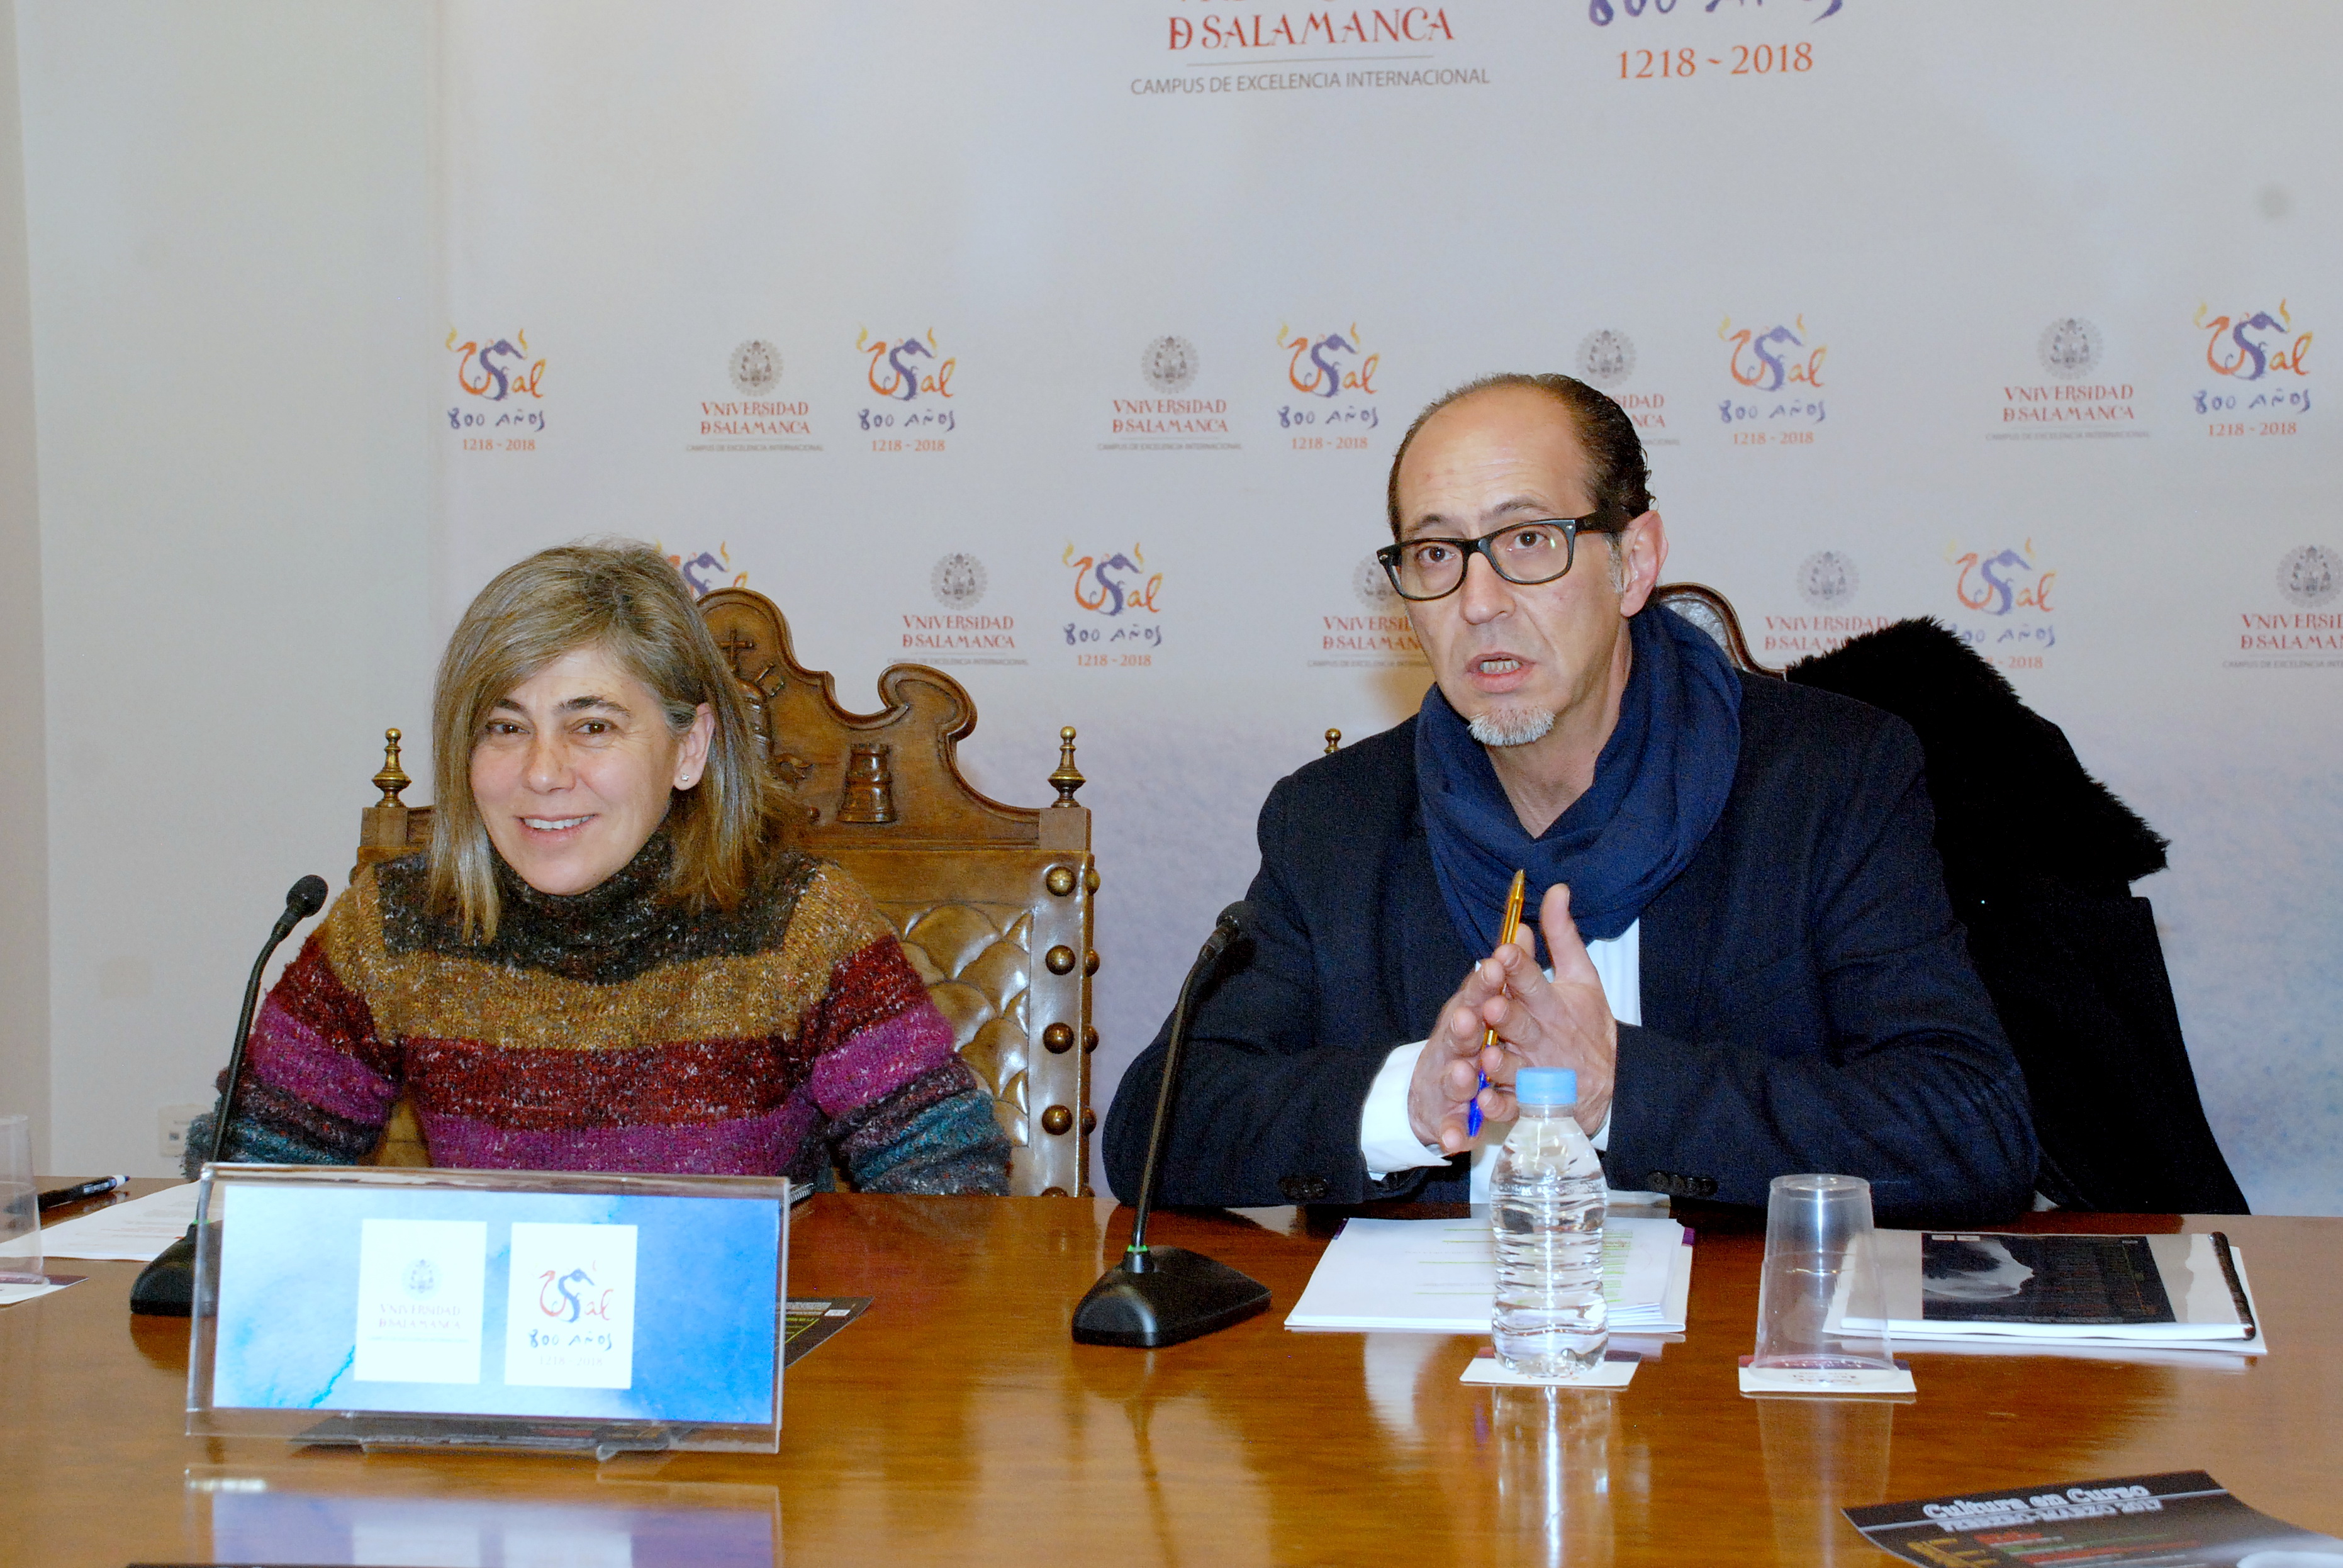 La programación cultural de la Universidad de Salamanca se presenta con numerosas propuestas musicales, cinematográficas y exposiciones científicas